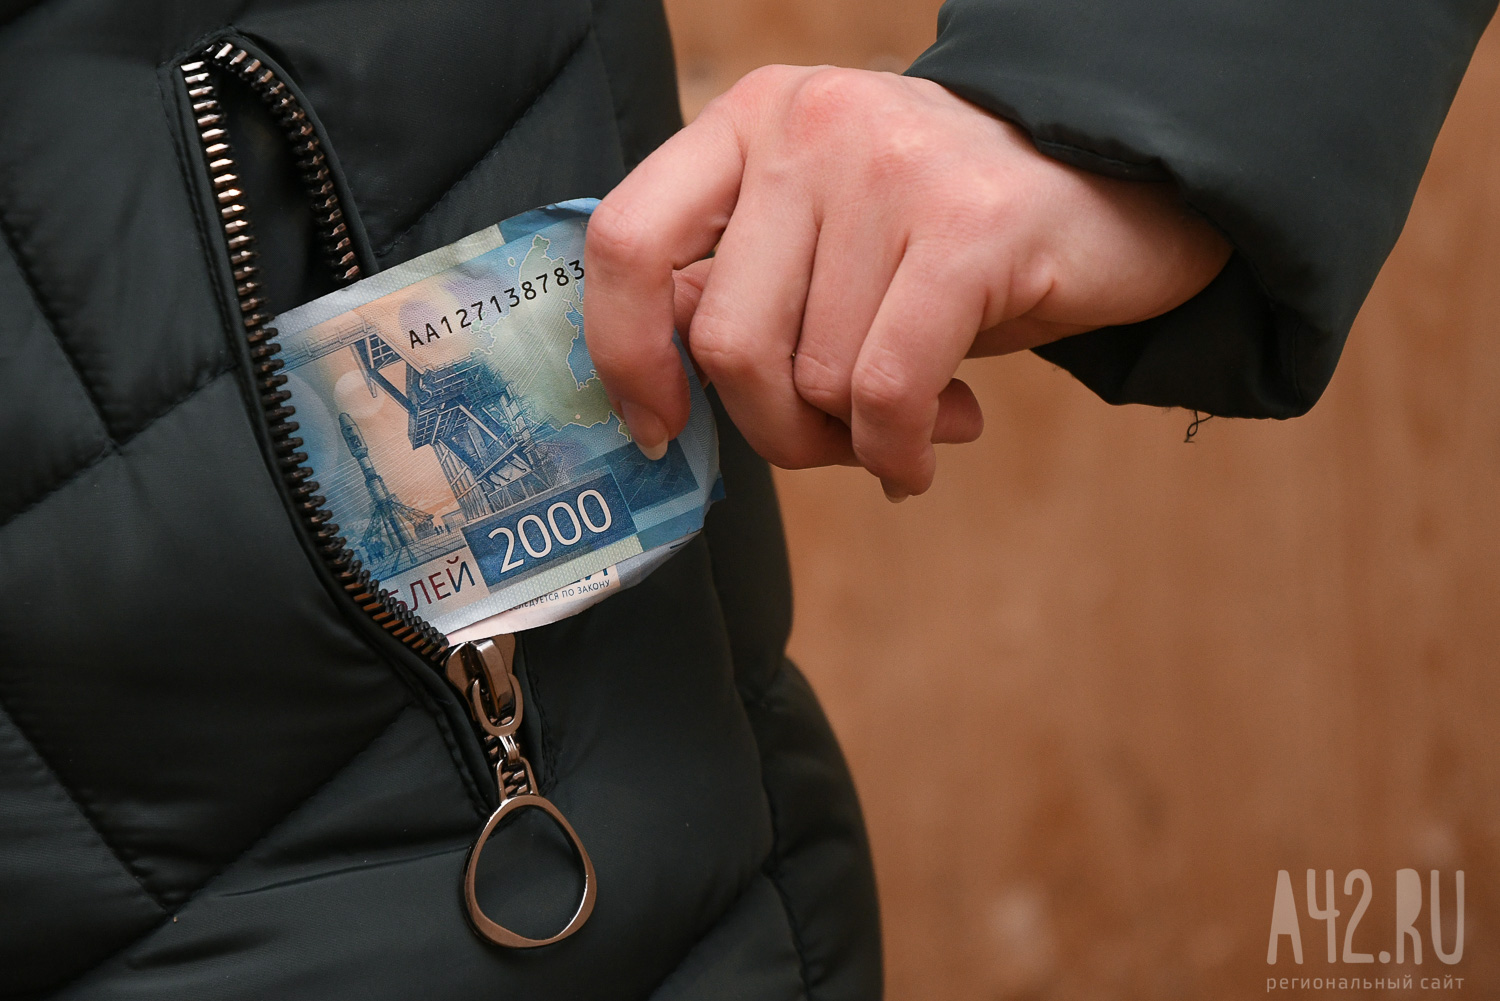 Исследование: половина жителей Кузбасса начнёт получать зарплату в 100 тысяч рублей через 5 лет